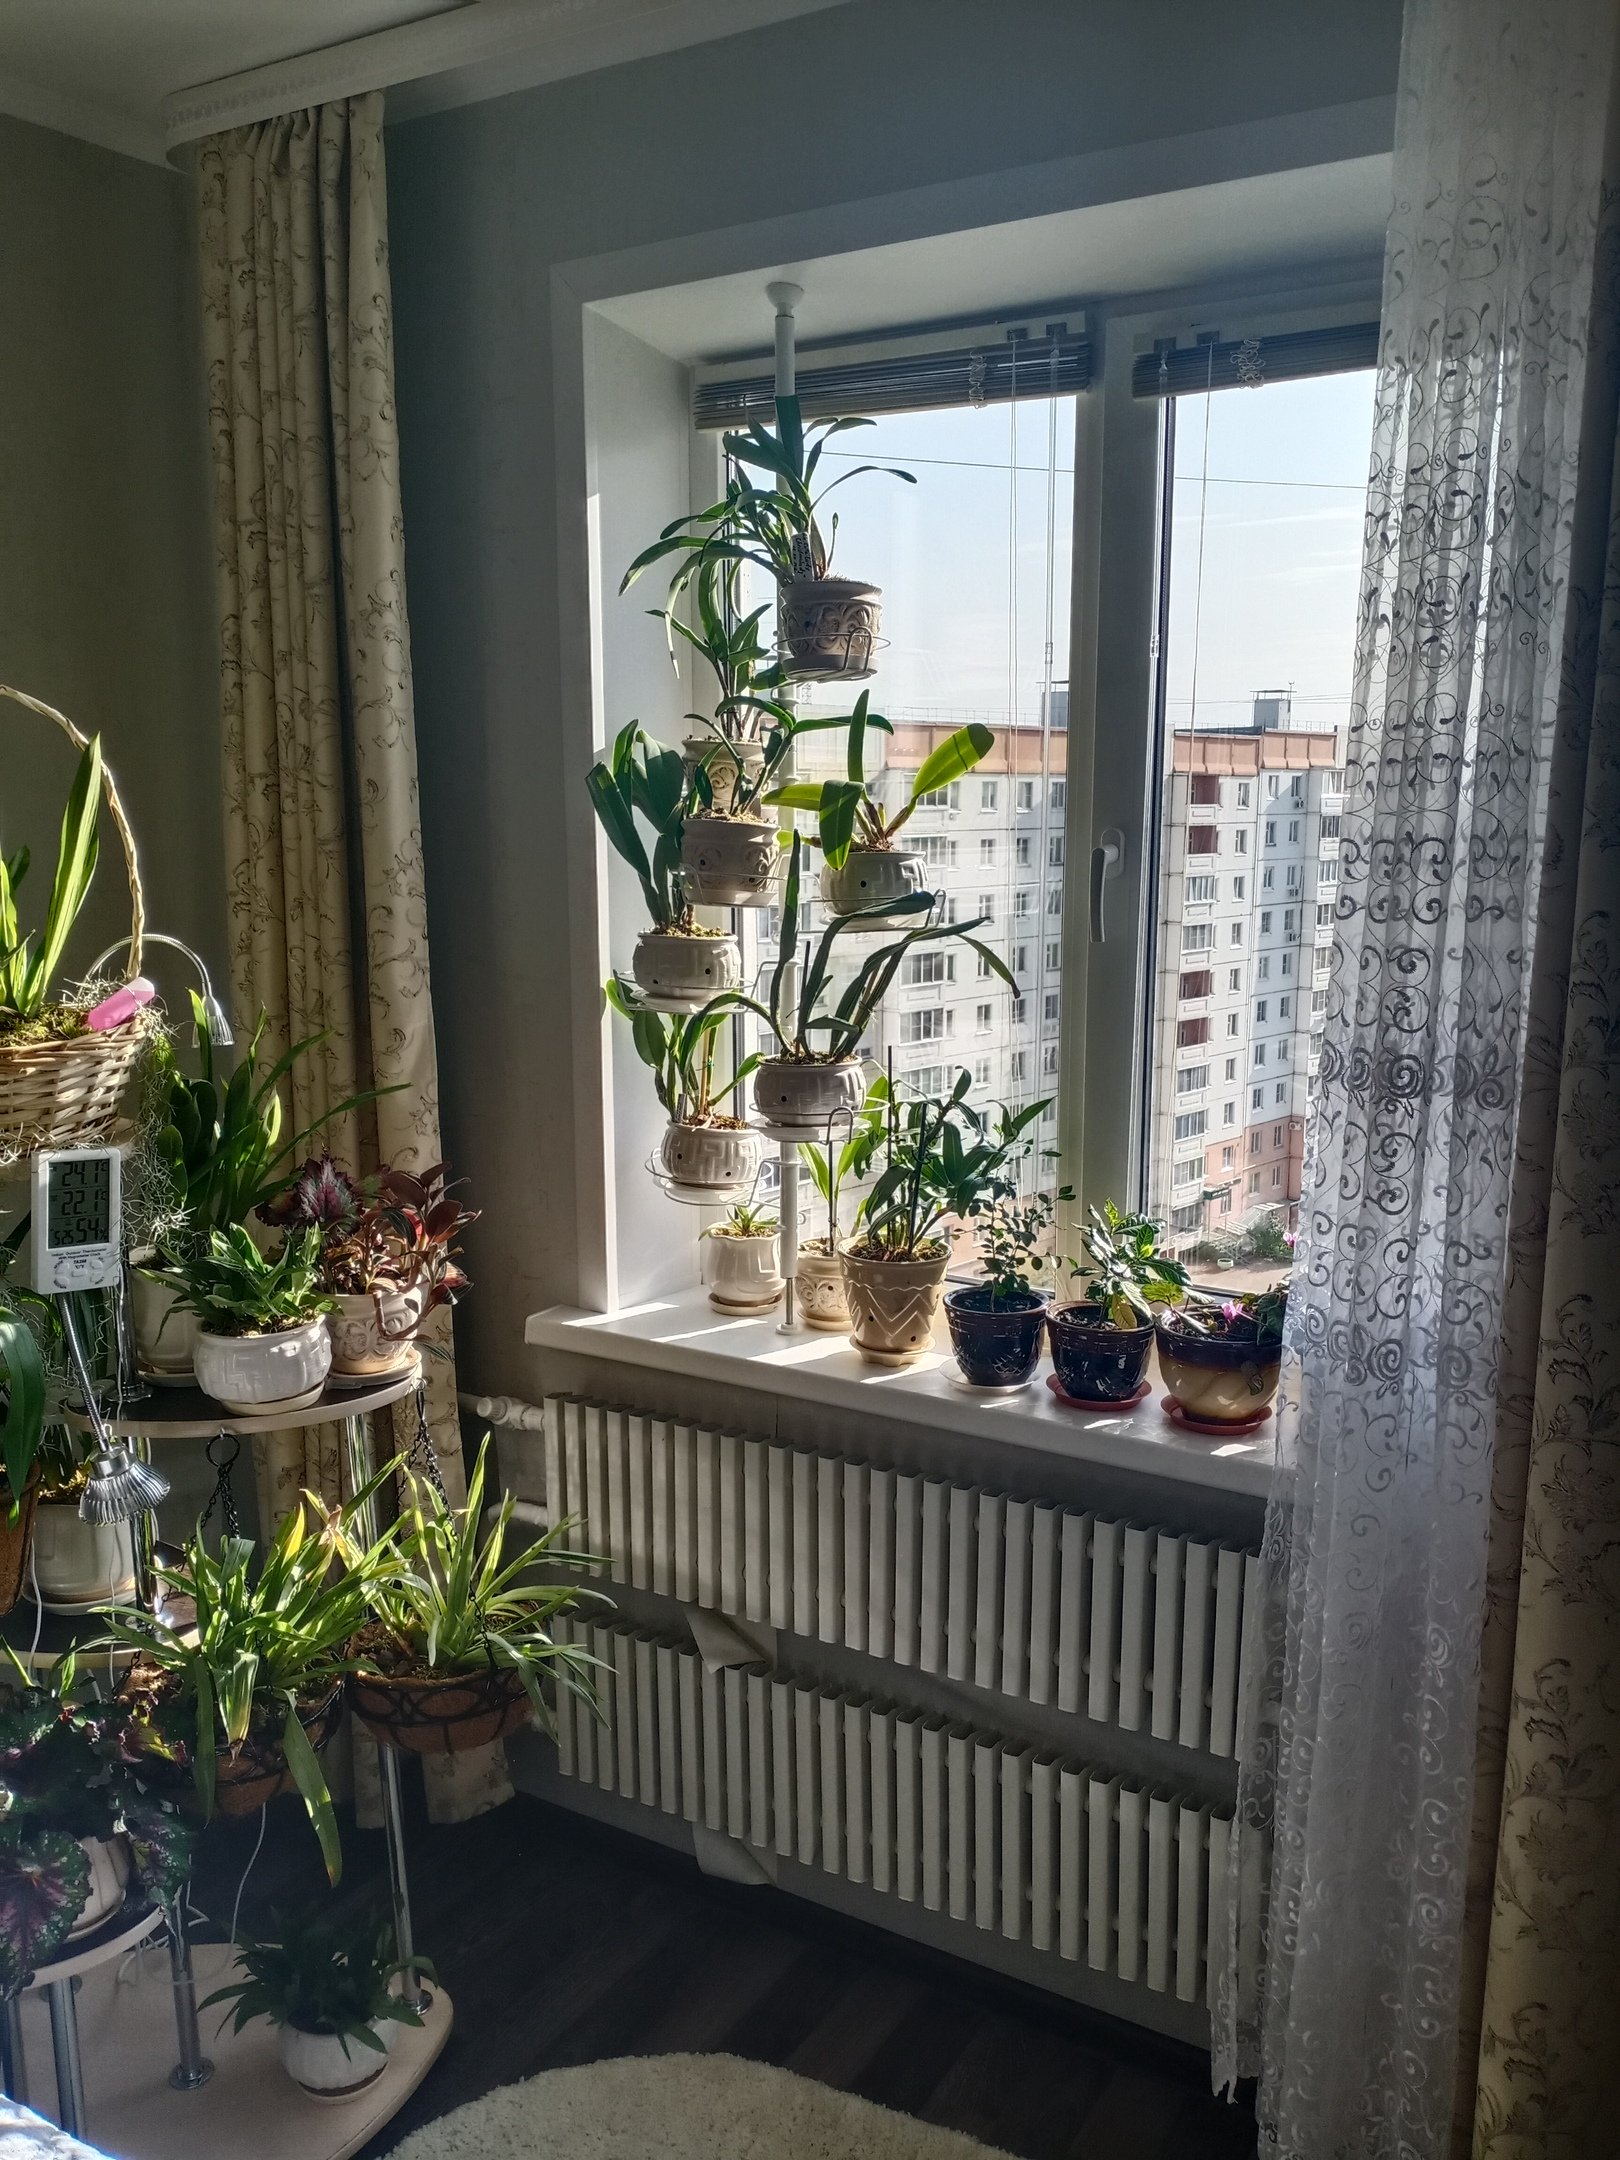 распорка для крупных растений на окно. Фото N9